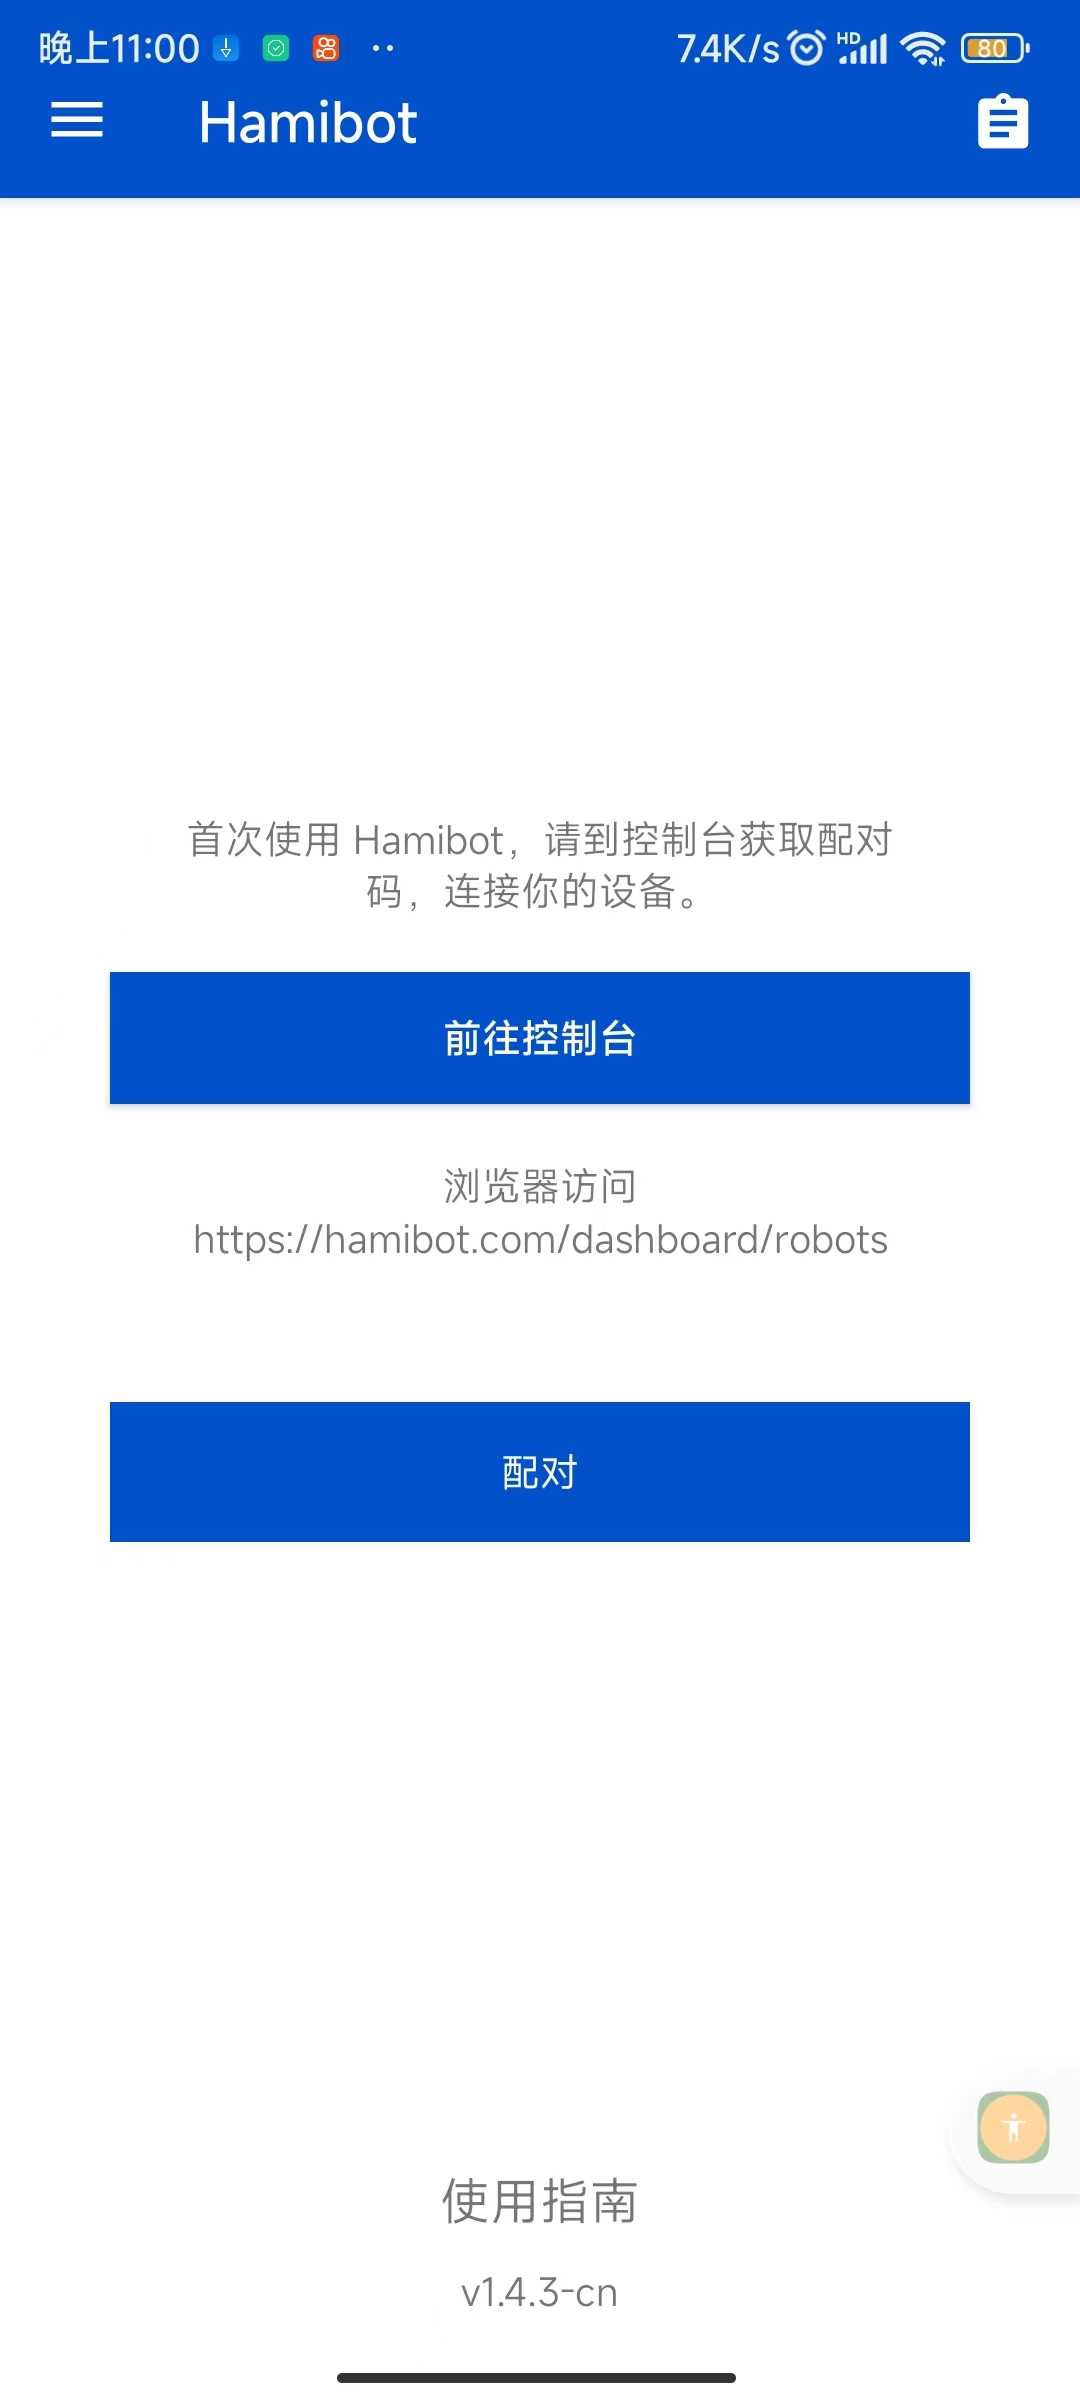 推荐一款好用且能兼职赚钱的自动化工具 -Hamibot